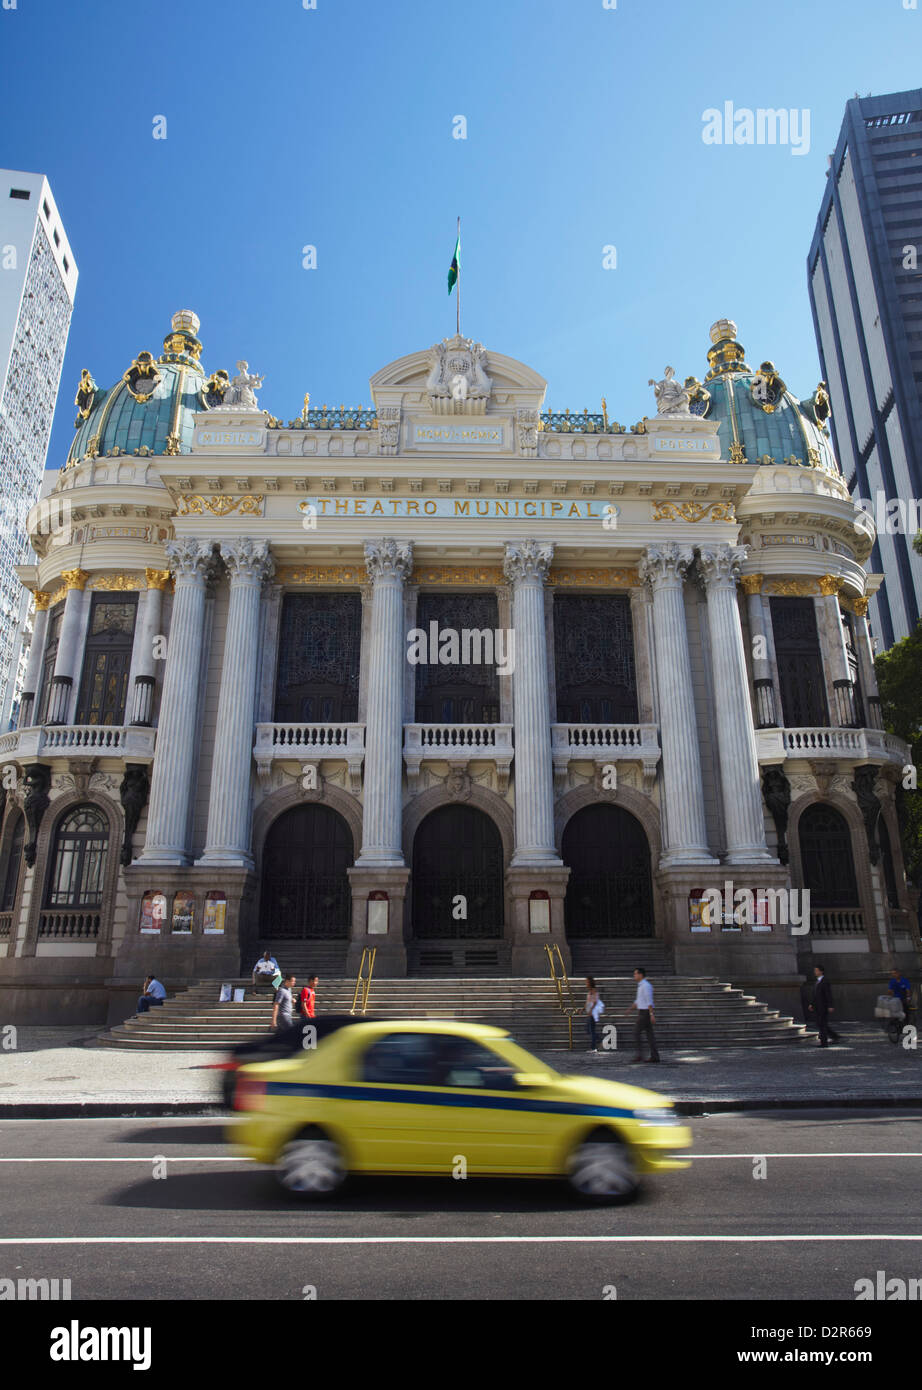 Theatro Municipal (Municipal Theatre) in Praca Floriano (Floriano Square), Centro, Rio de Janeiro, Brazil, South America Stock Photo